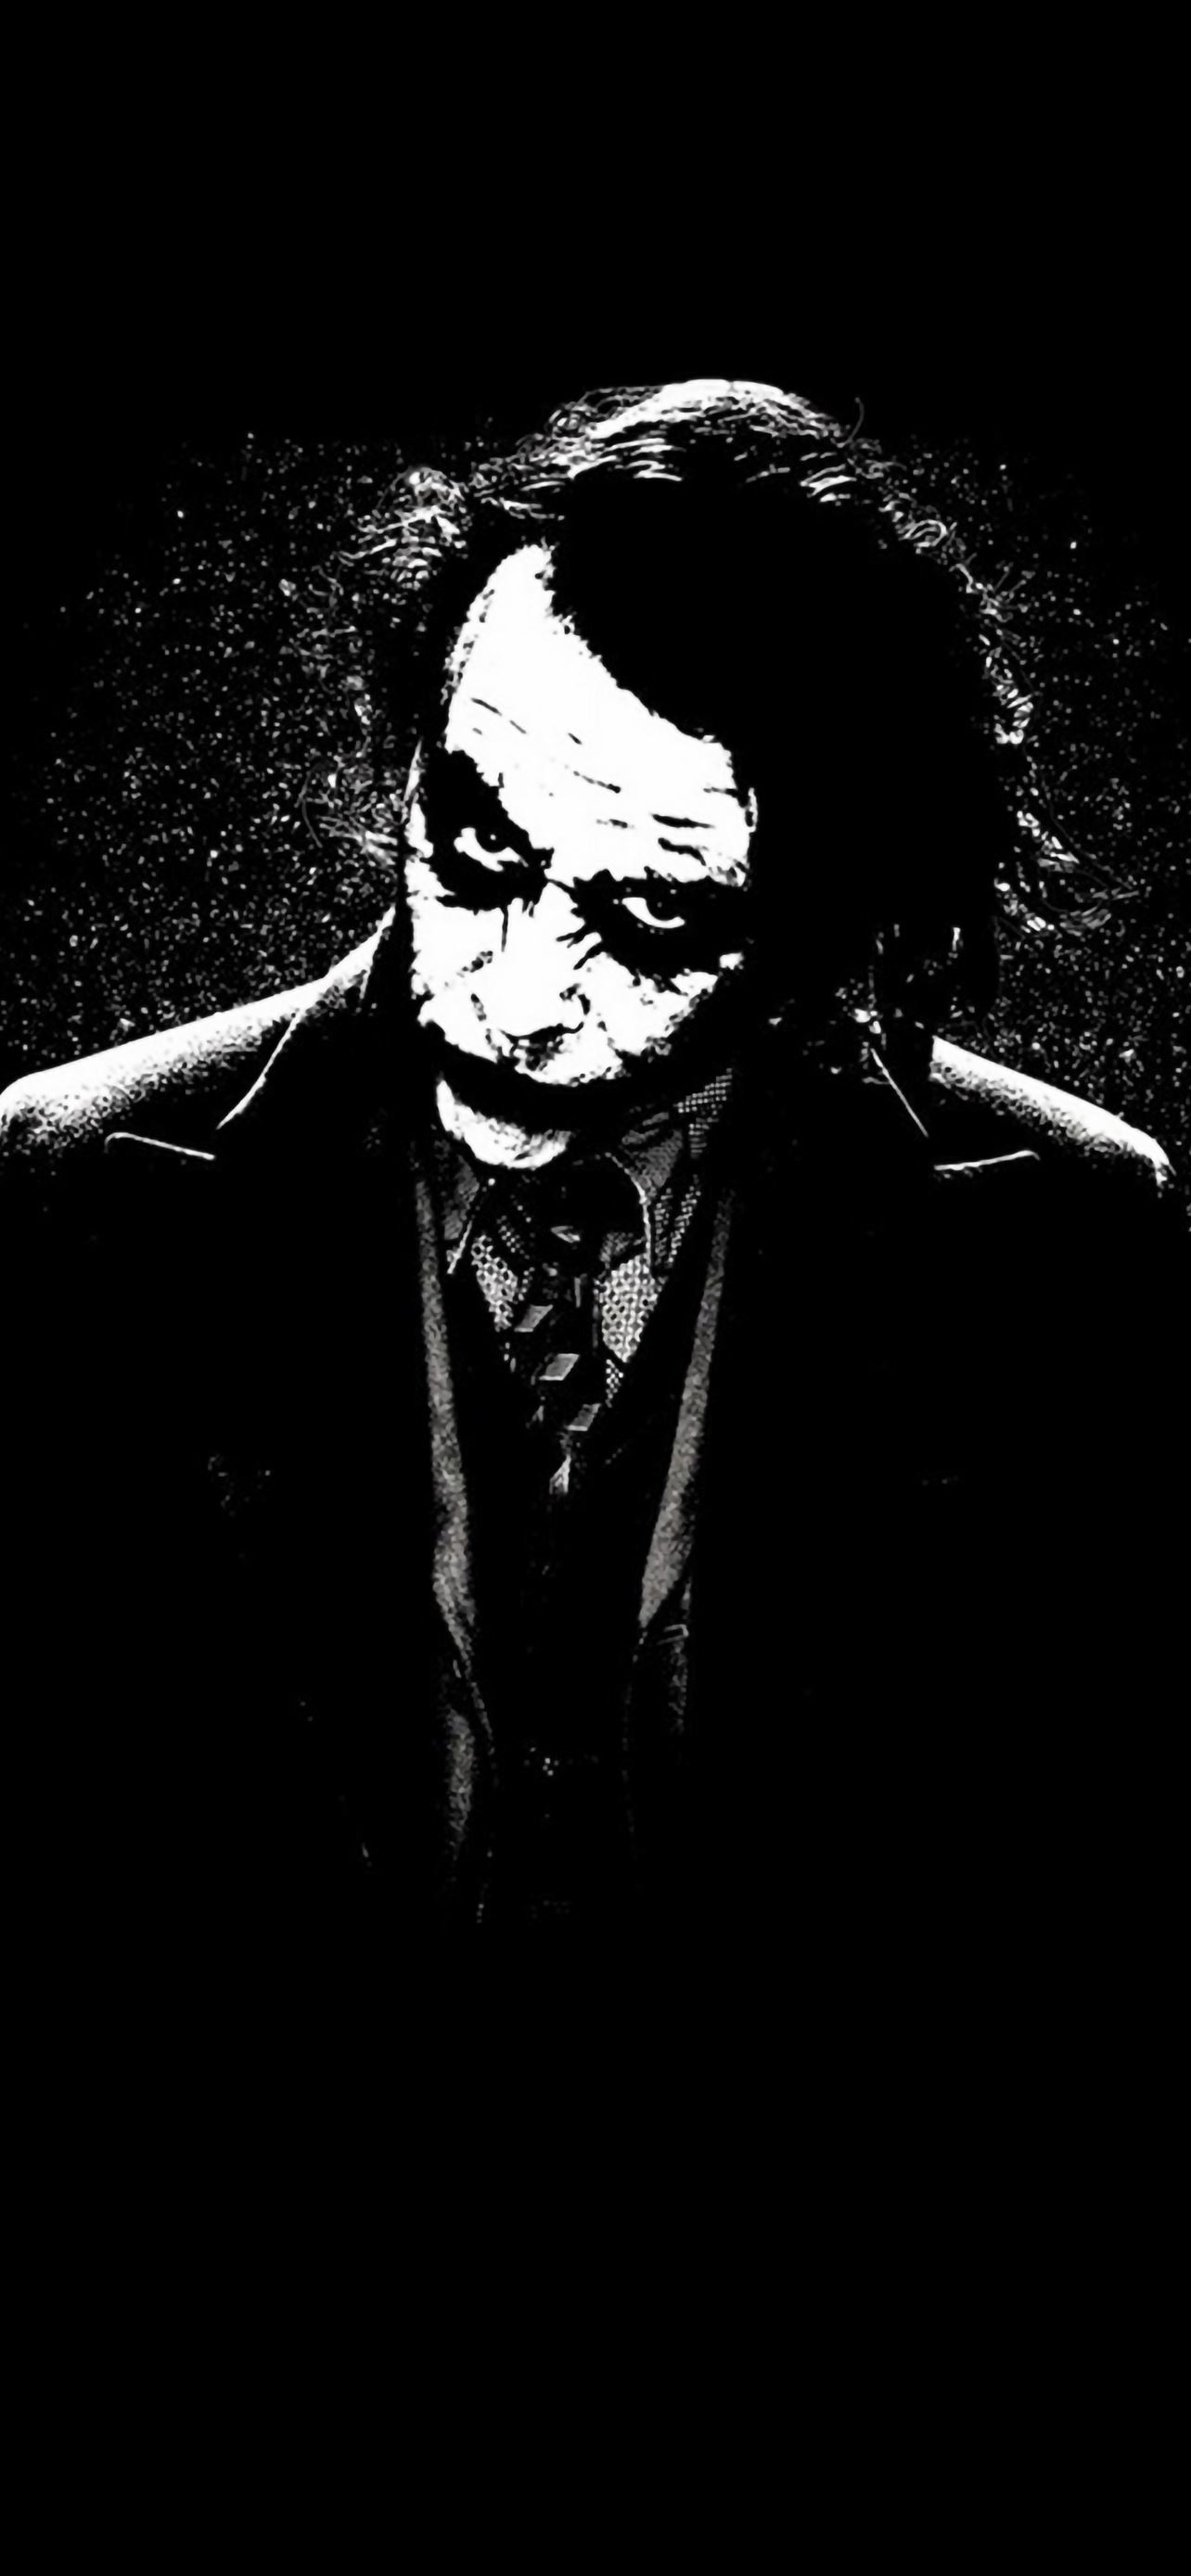 Joker Batman là một tác phẩm nghệ thuật đầy tính sáng tạo và nghệ thuật. Các nhân vật của bộ phim mang đến một cảm giác bí ẩn, đầy tinh túy mà có thể làm say đắm bất cứ ai. Hãy xem hình ảnh liên quan đến Joker Batman và khám phá thế giới đầy sáng tạo của đạo diễn. 